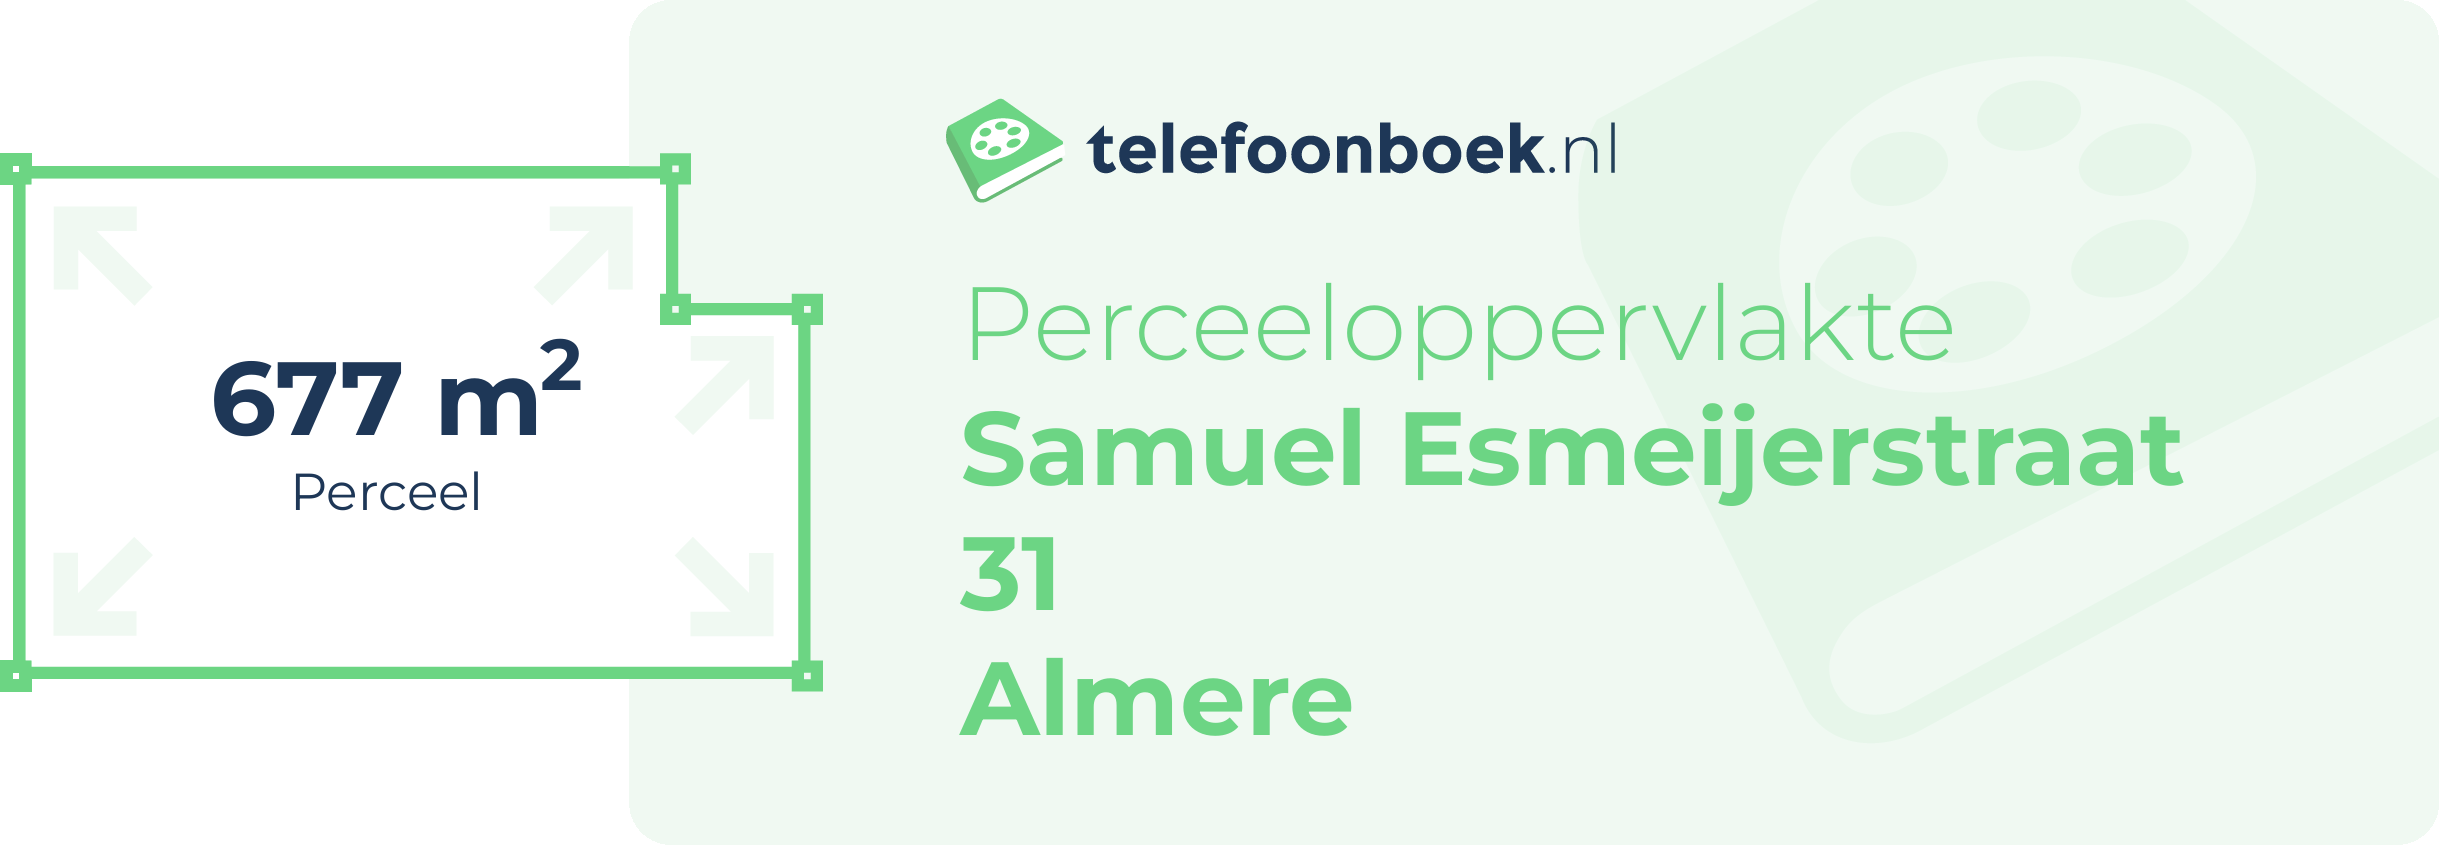 Perceeloppervlakte Samuel Esmeijerstraat 31 Almere